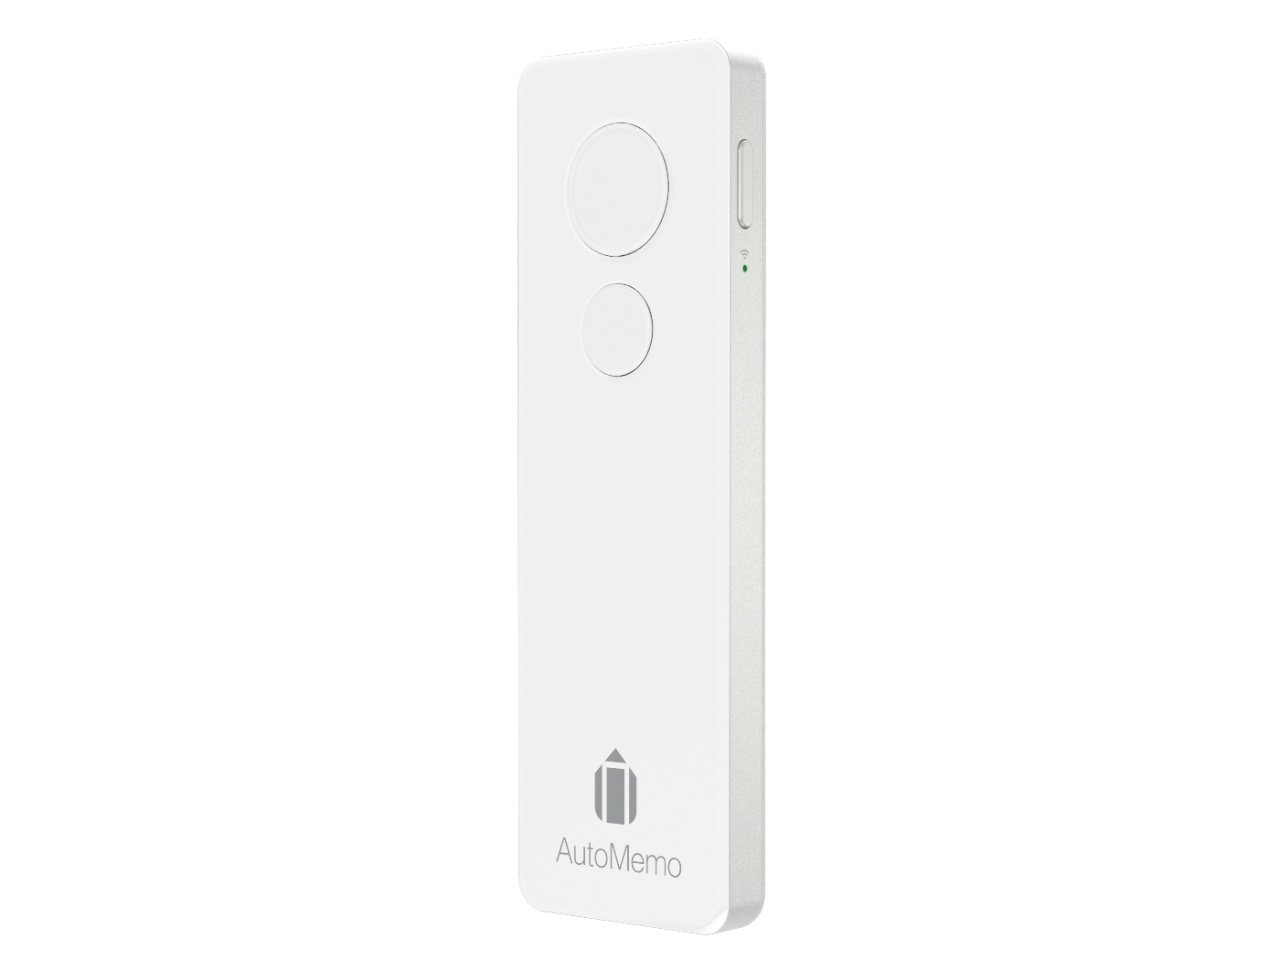 AIボイスレコーダー「AutoMemo」、1万9800円から9900円に値下げ - ITmedia Mobile